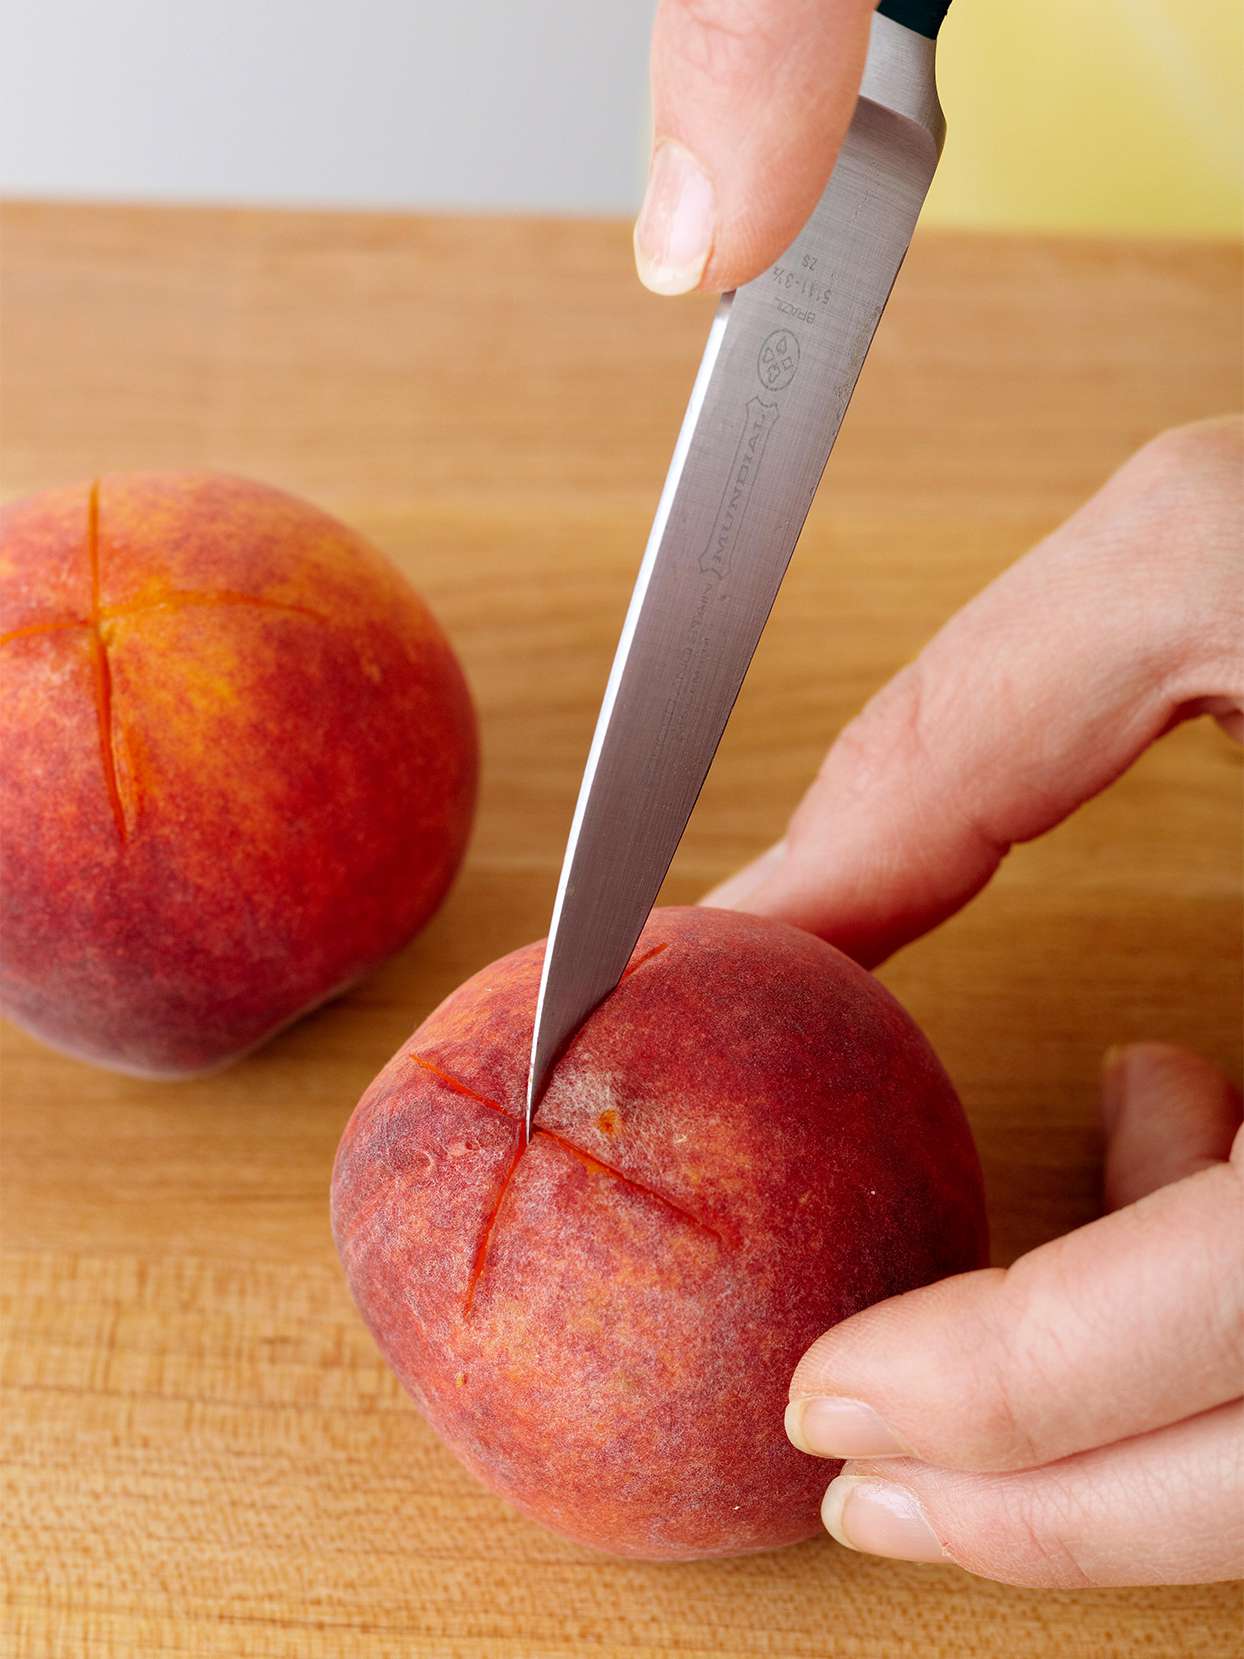 knife cutting an X into a peach